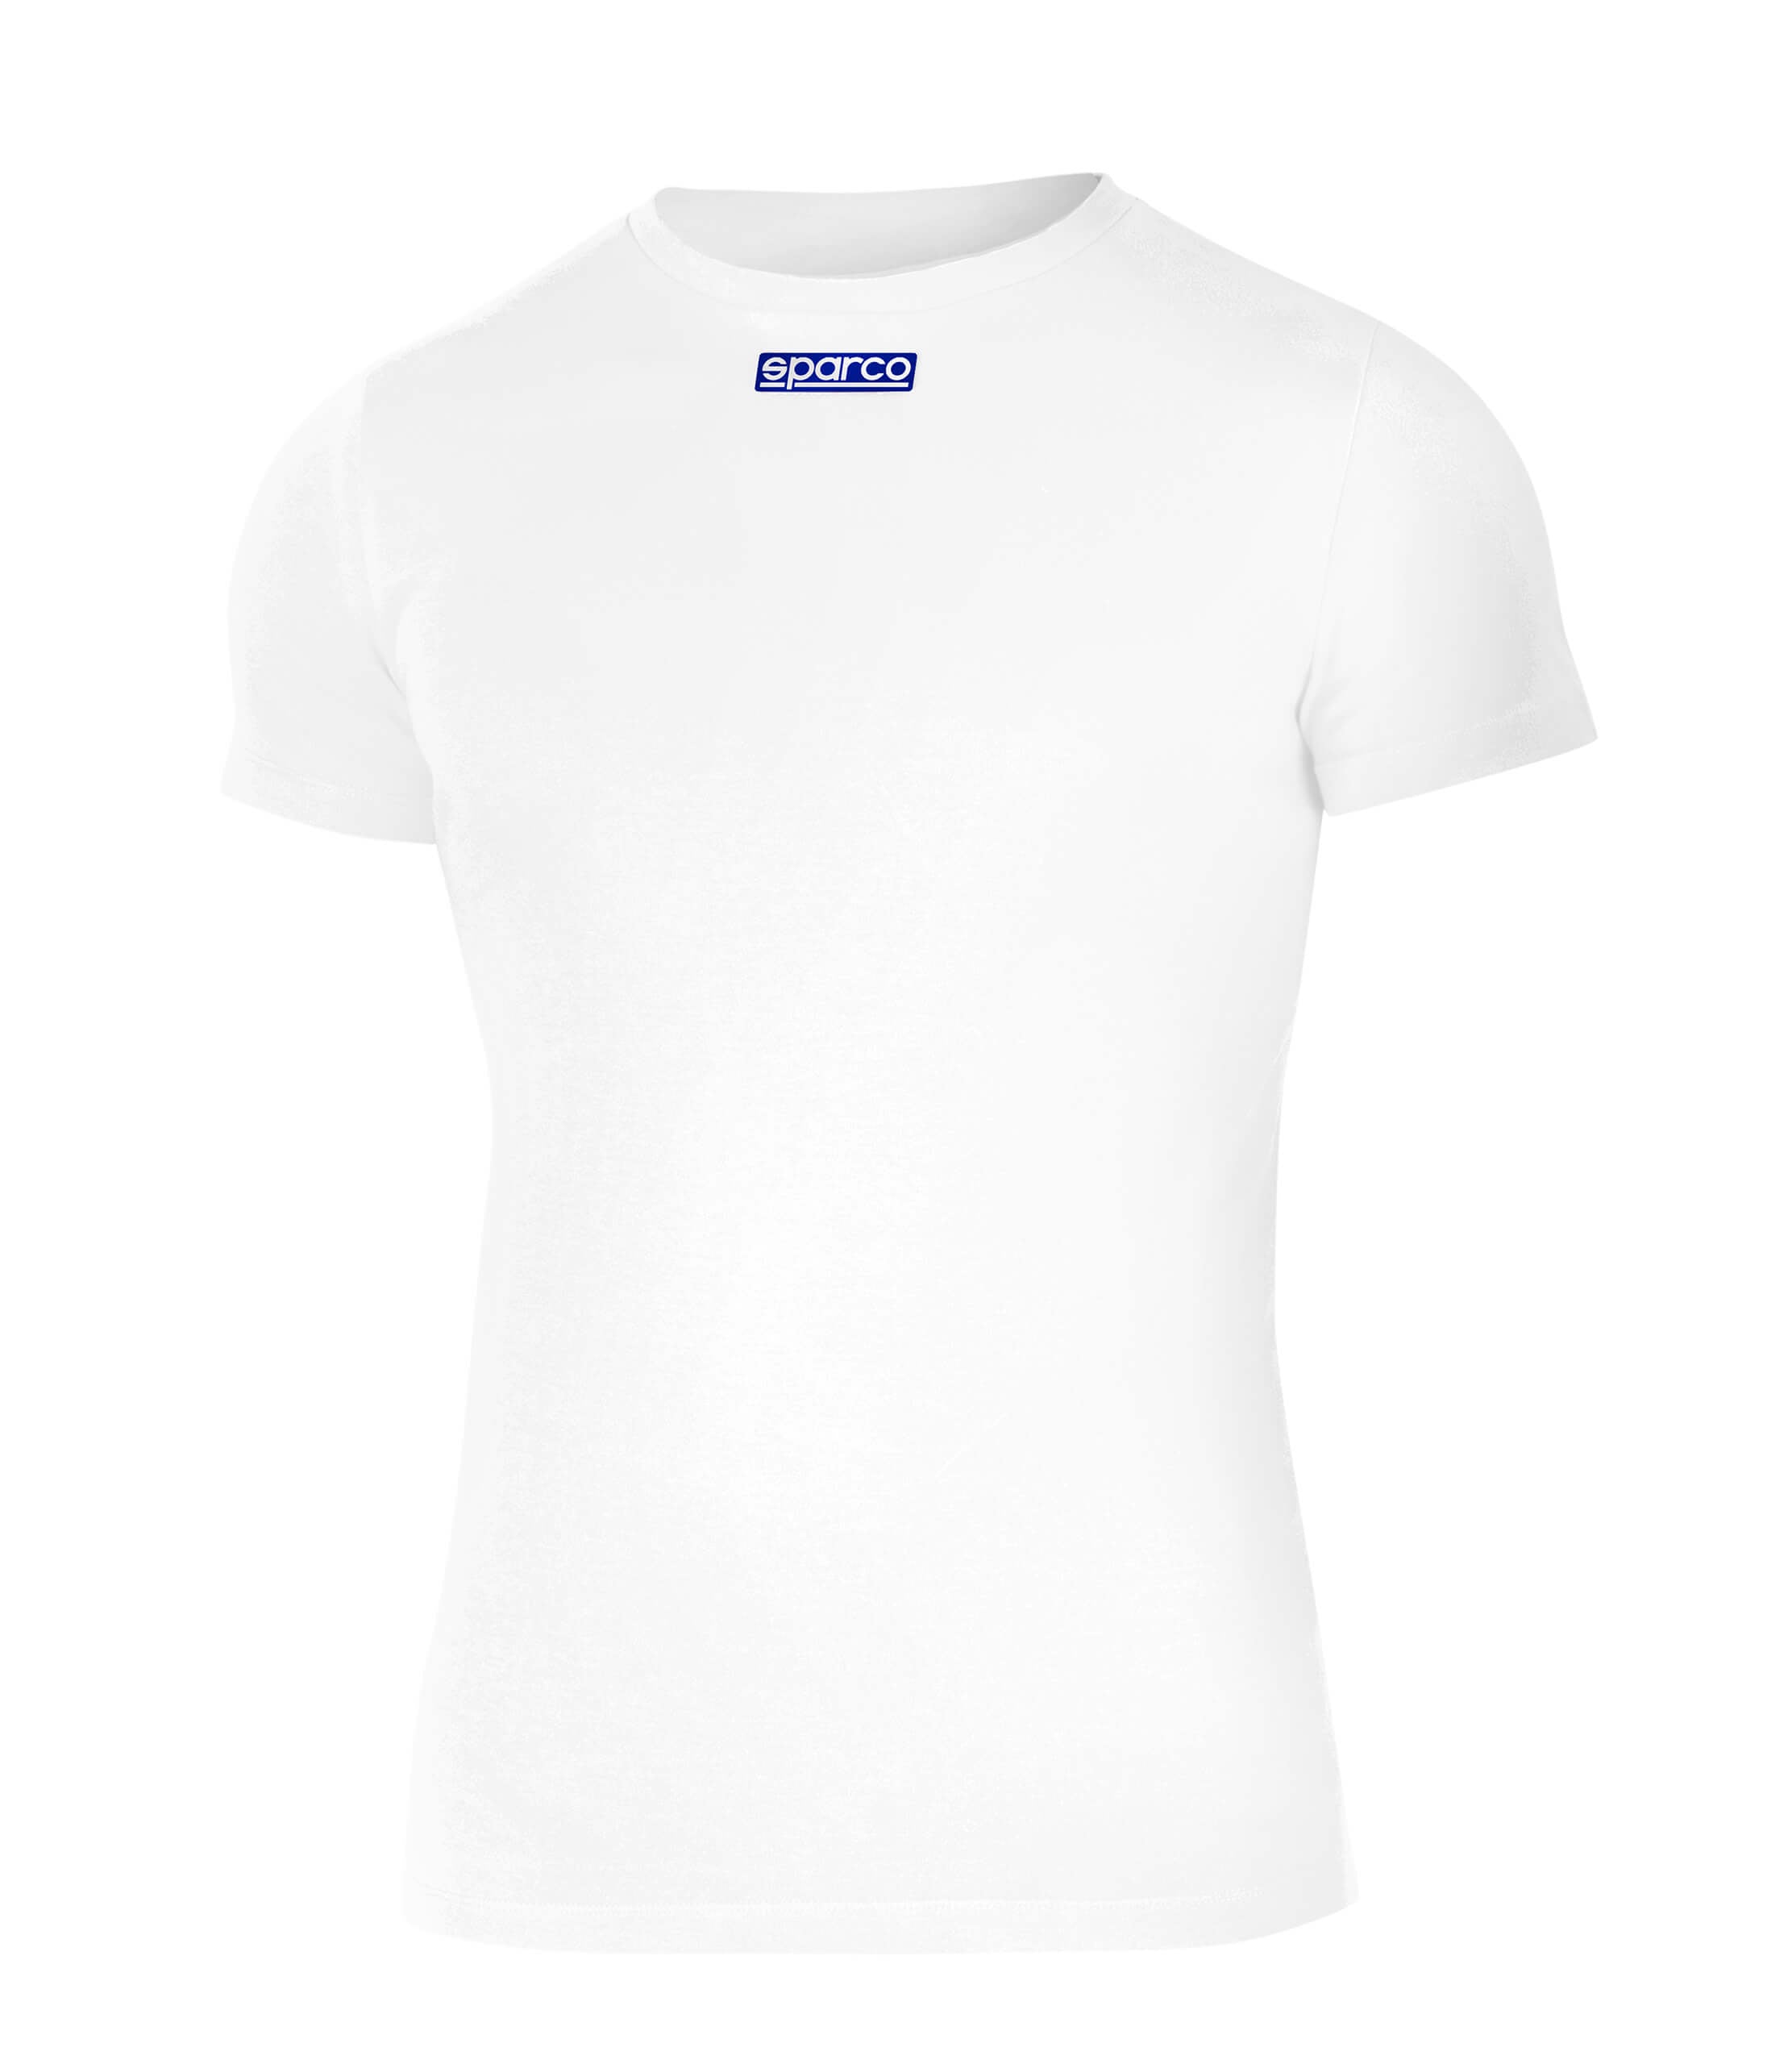 SPARCO 002204BI4XL B-ROOKIE Karting T shirt, cotton, white, size XL Photo-0 